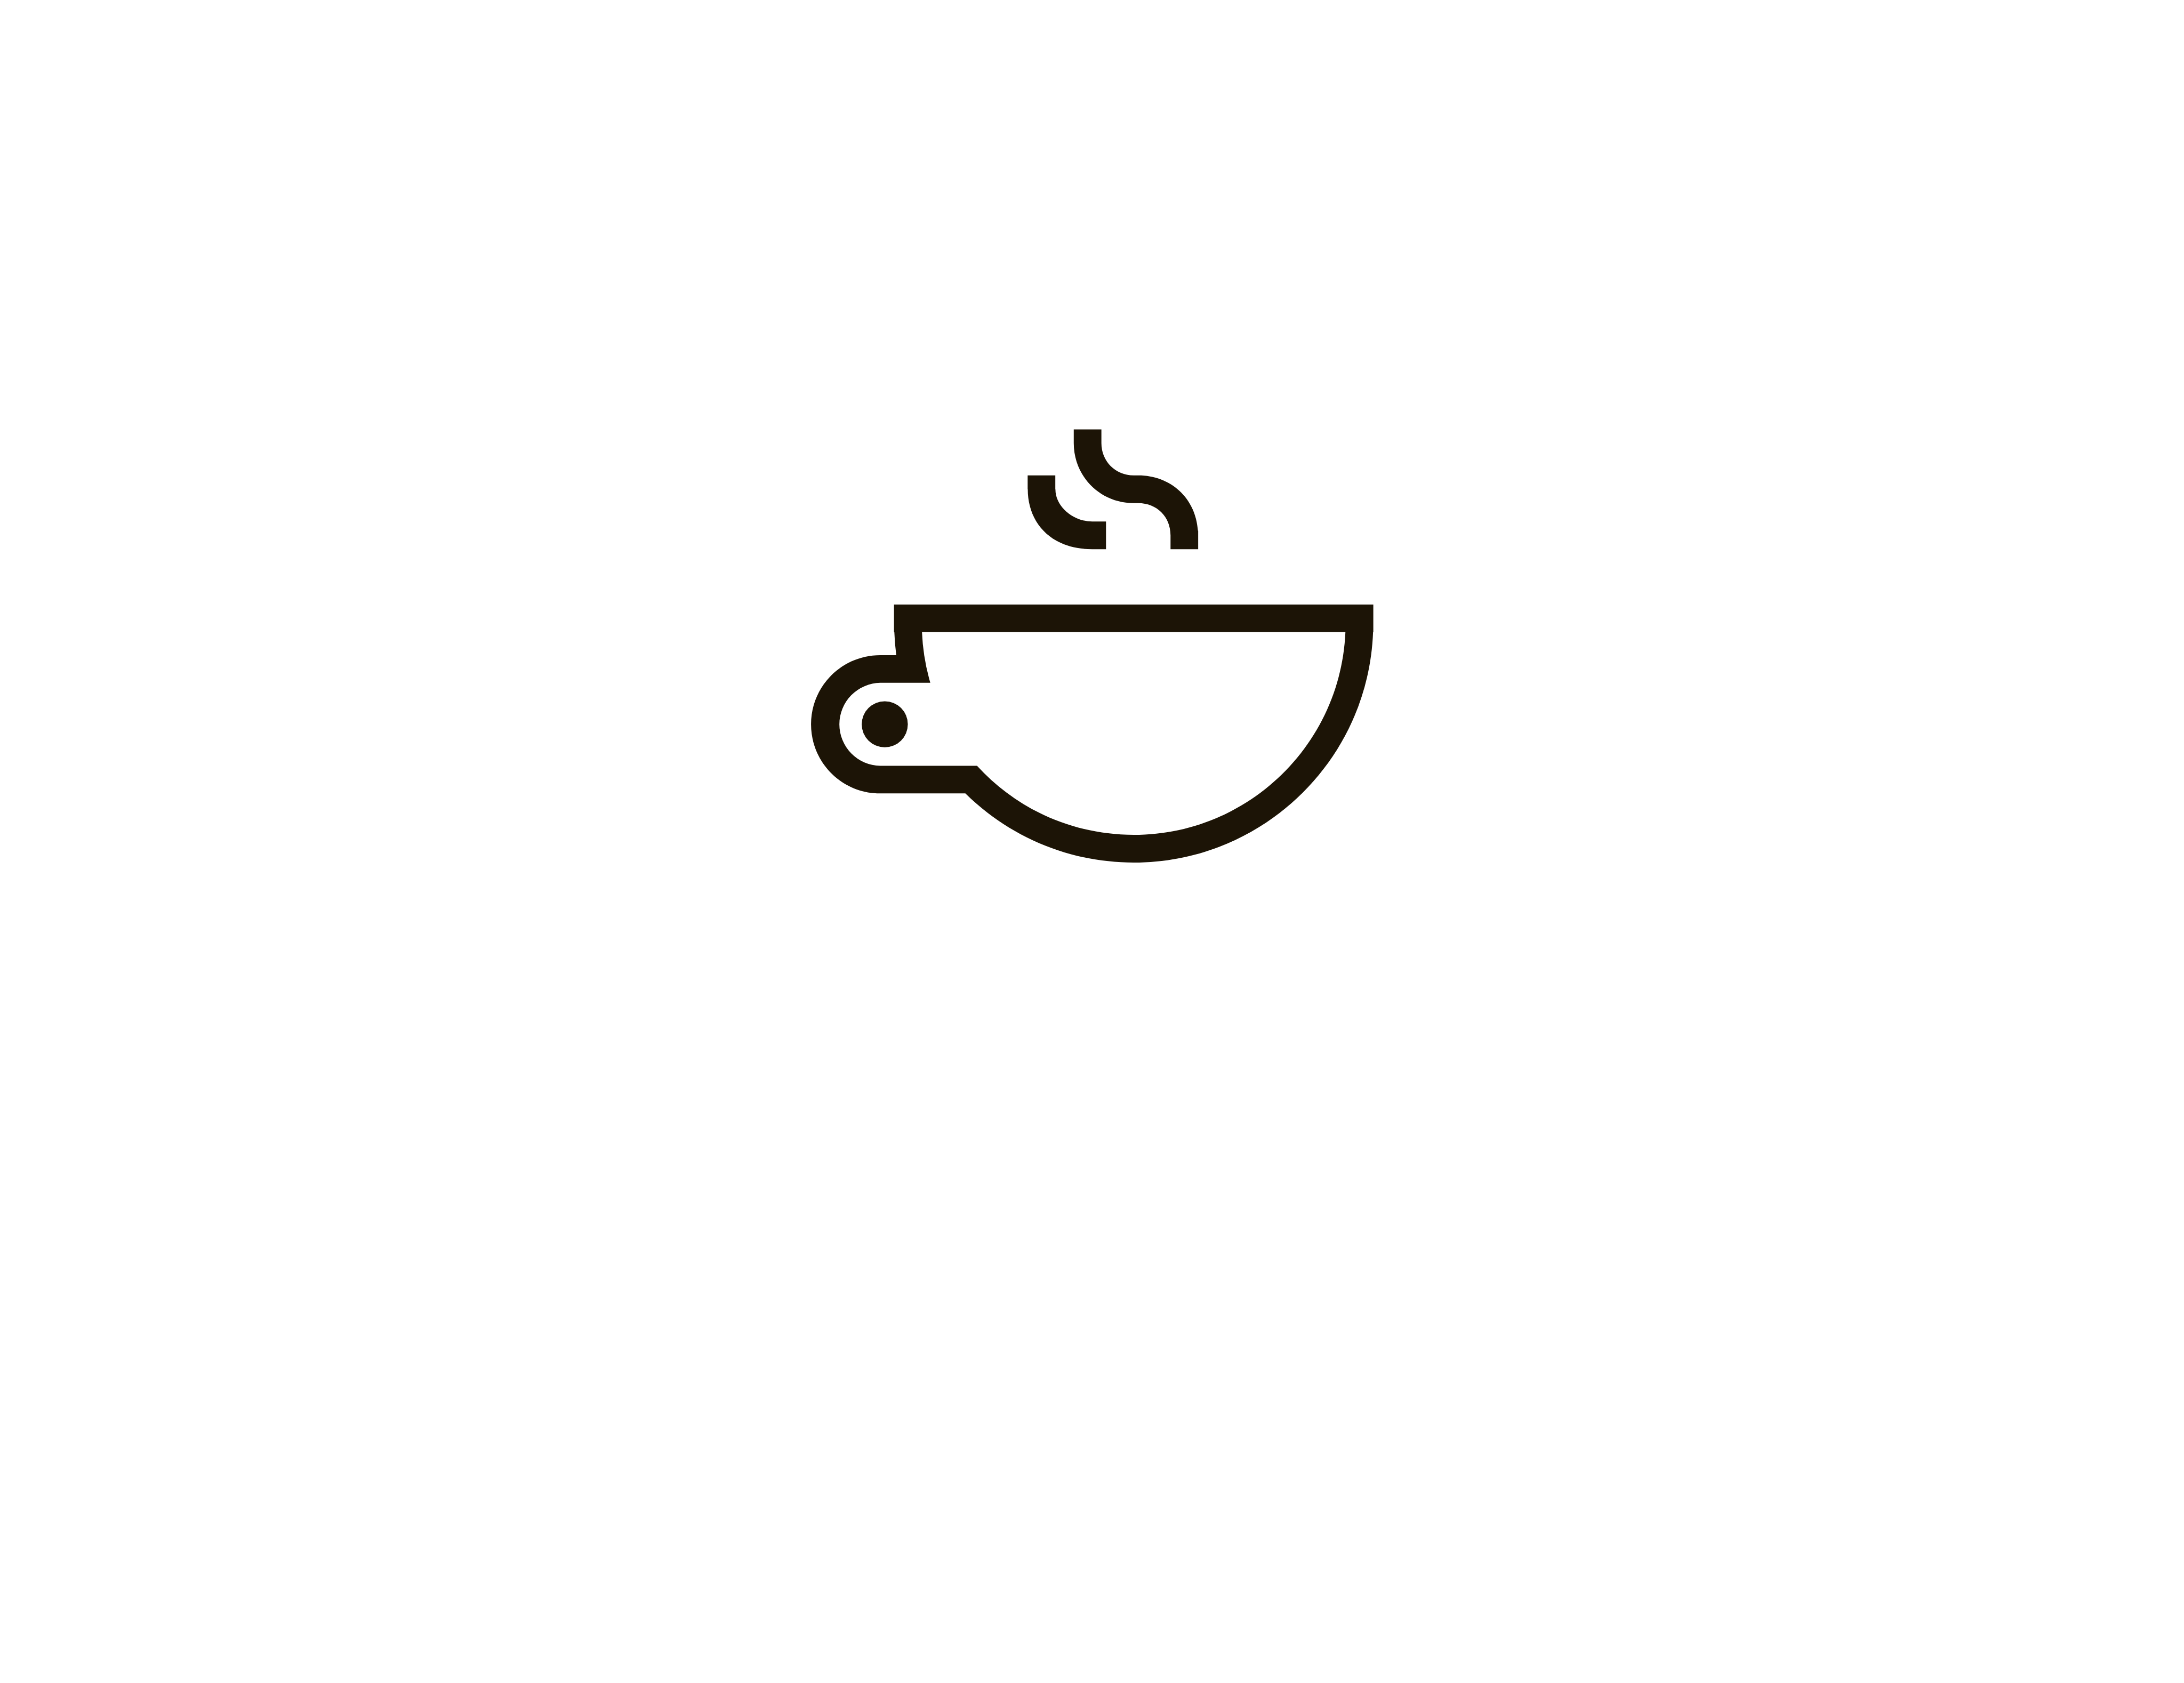 MetaCaffè